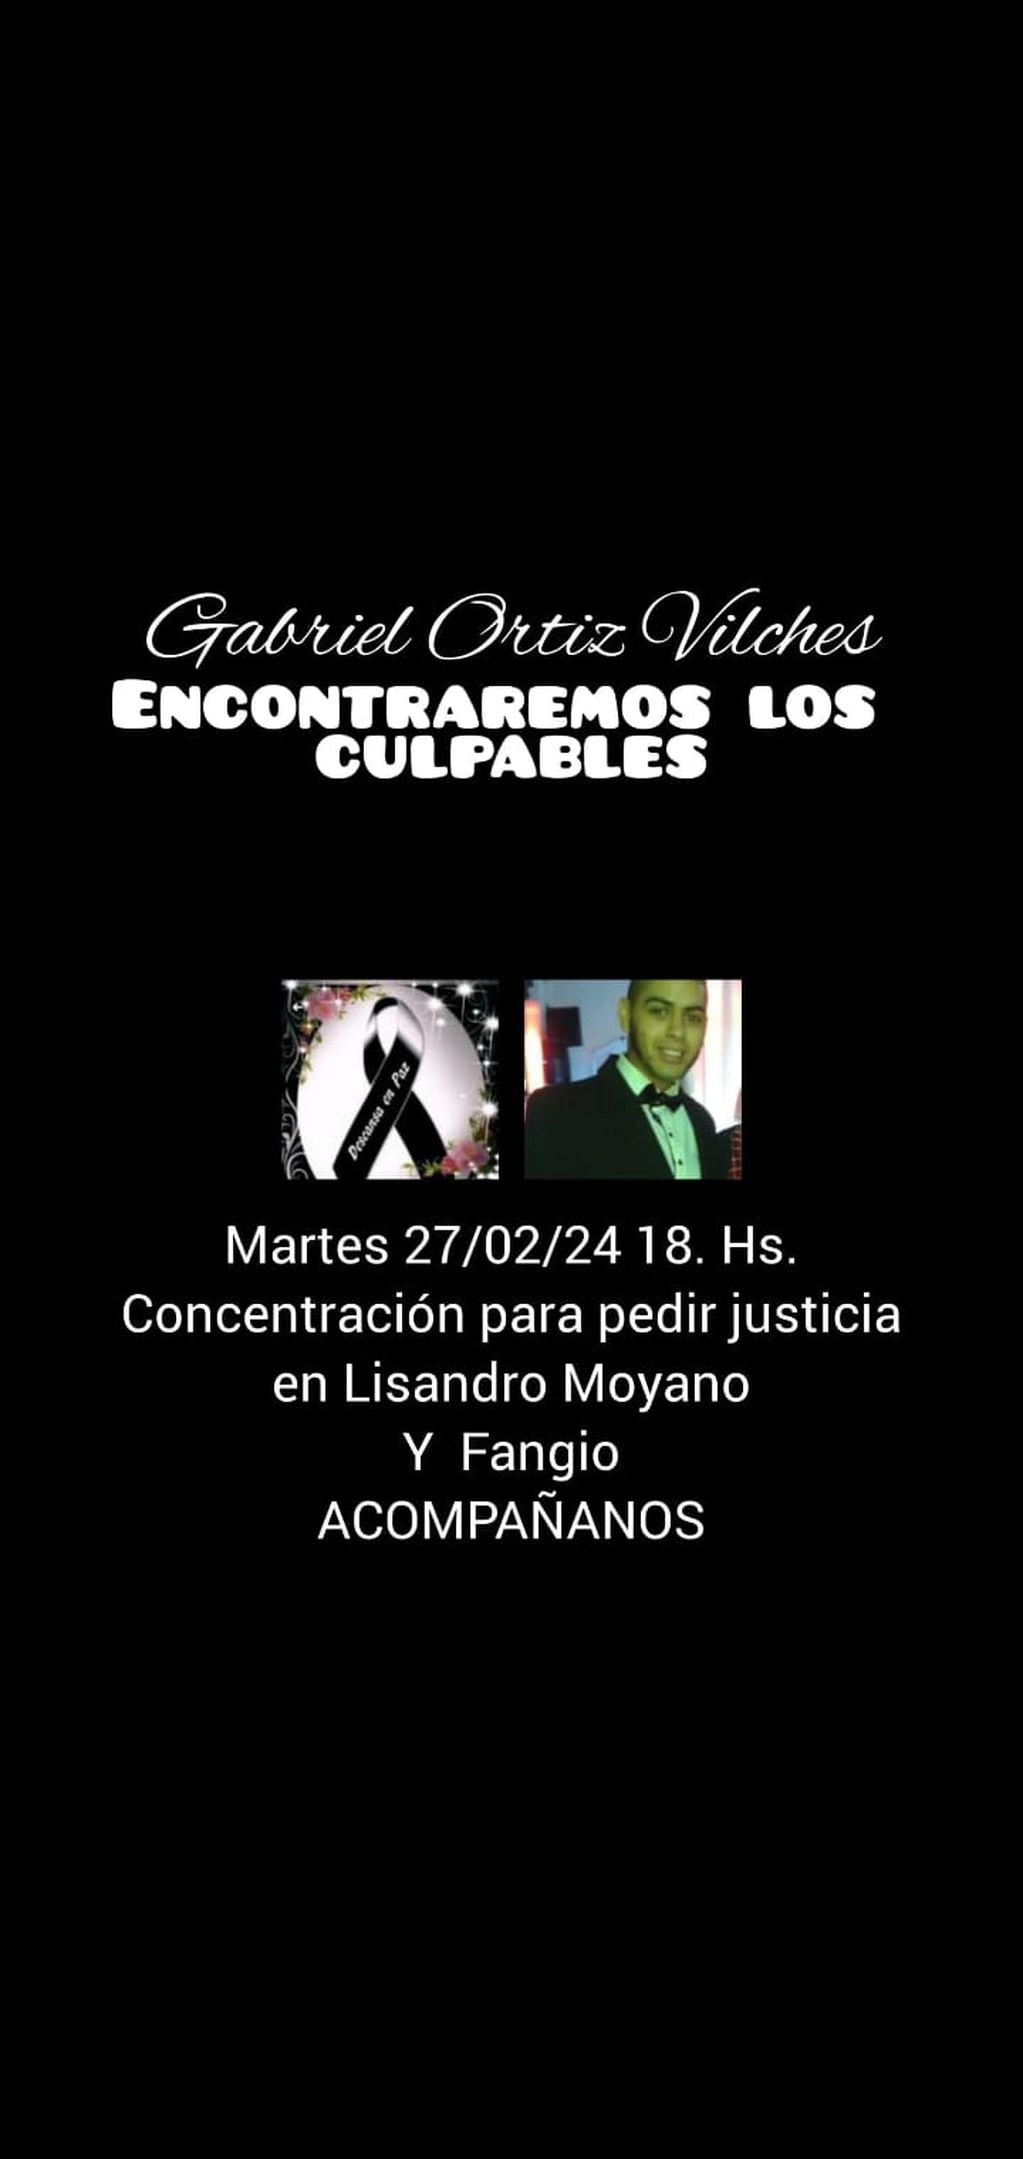 El anuncio de los familiares de Gabriel Ortiz Vilchez, asesinado en Las Heras. foto: Facebook